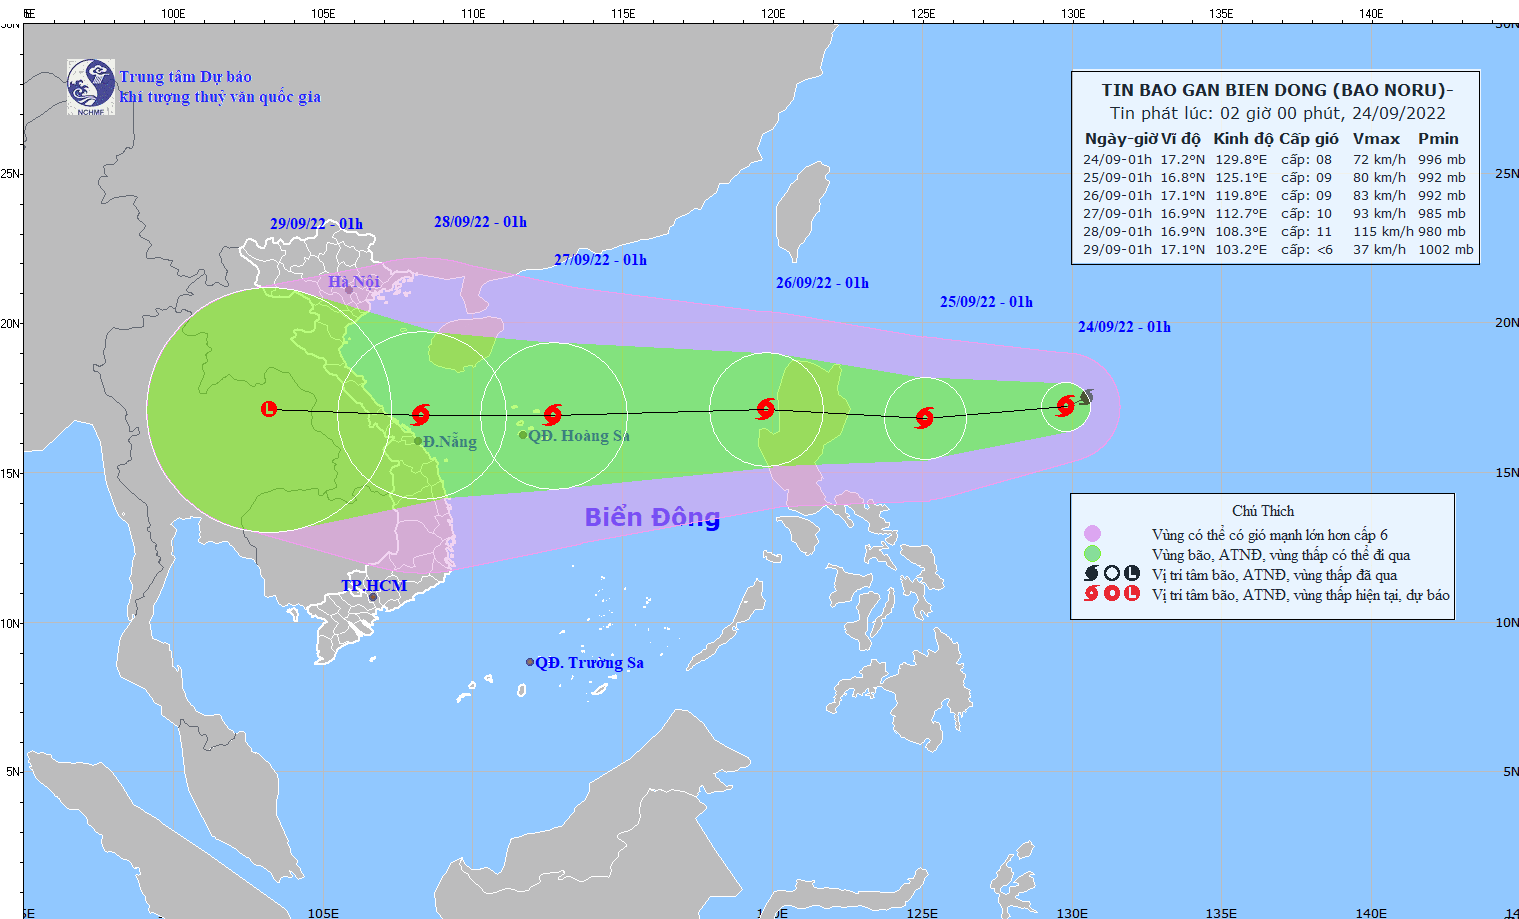 Bão Noru tiến vào Biển Đông, Việt Nam có thể đón nhận cơn bão số 4 - Ảnh 1.